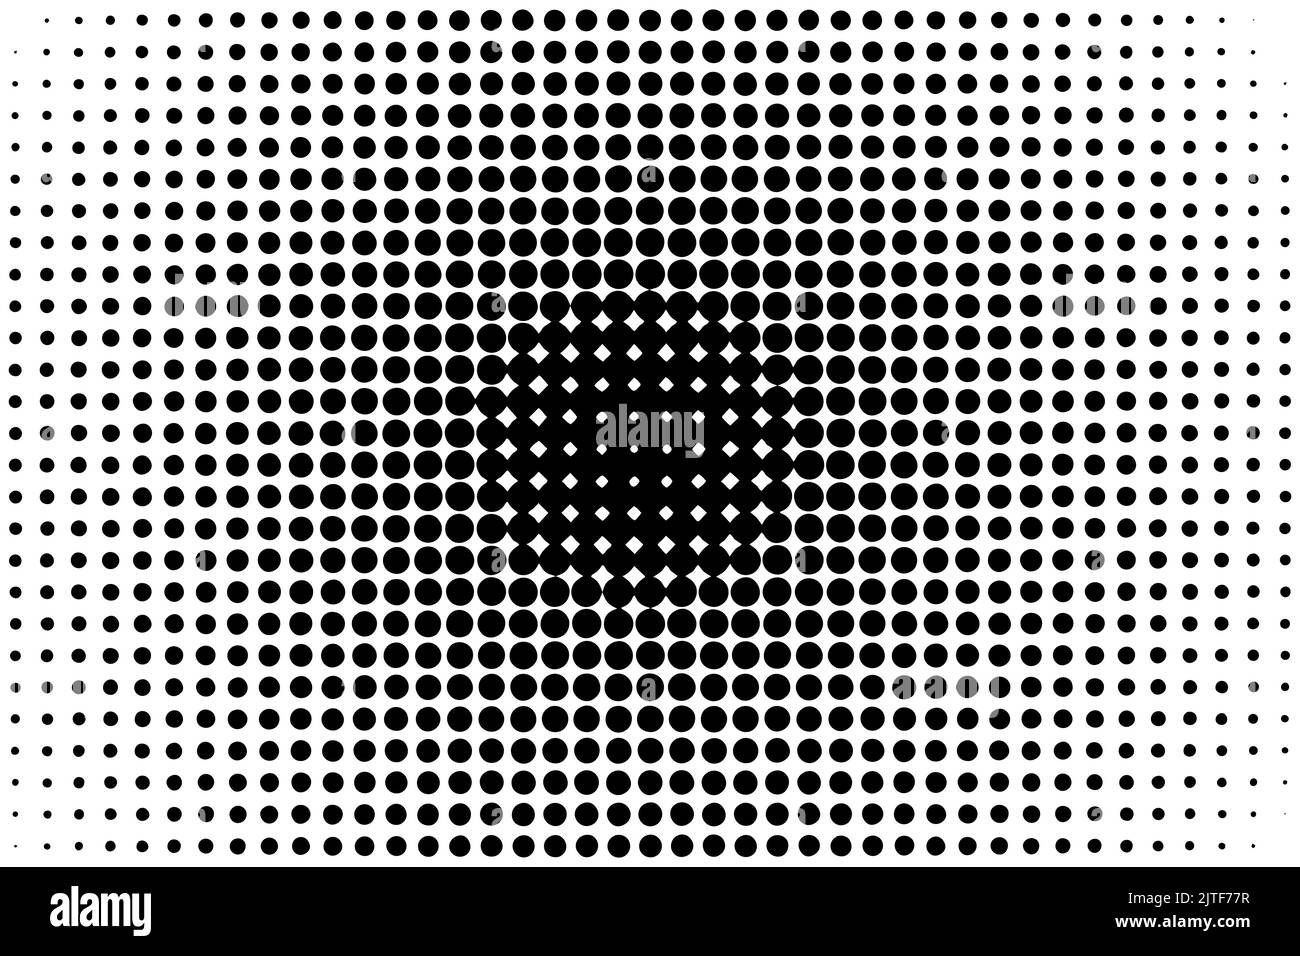 Fondo de patrón de semitonos abstracto. Blanco y negro. Ilustración de vector plano Ilustración del Vector